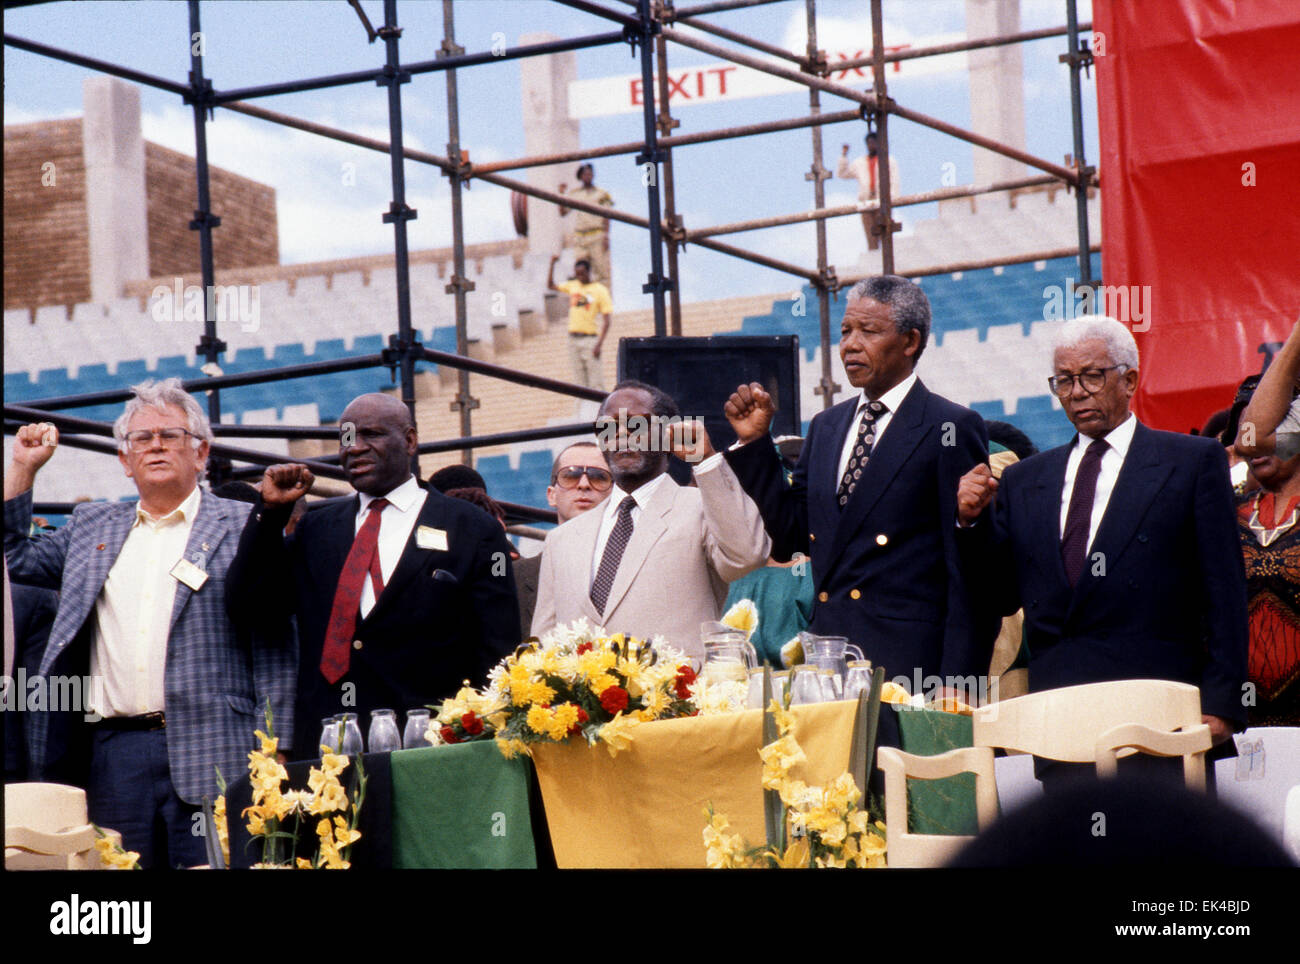 Il giorno degli eroi, Soweto 16.12.1990 Joe Slovo,Raymond Mhlaba,Oliver Tambo, Nelson Mandela, Walter Sisulu un rally a Johannesburg, a seguito di Mandela del rilascio dalla prigione e Tambo di ritorno da trent'anni di esilio. Foto Stock